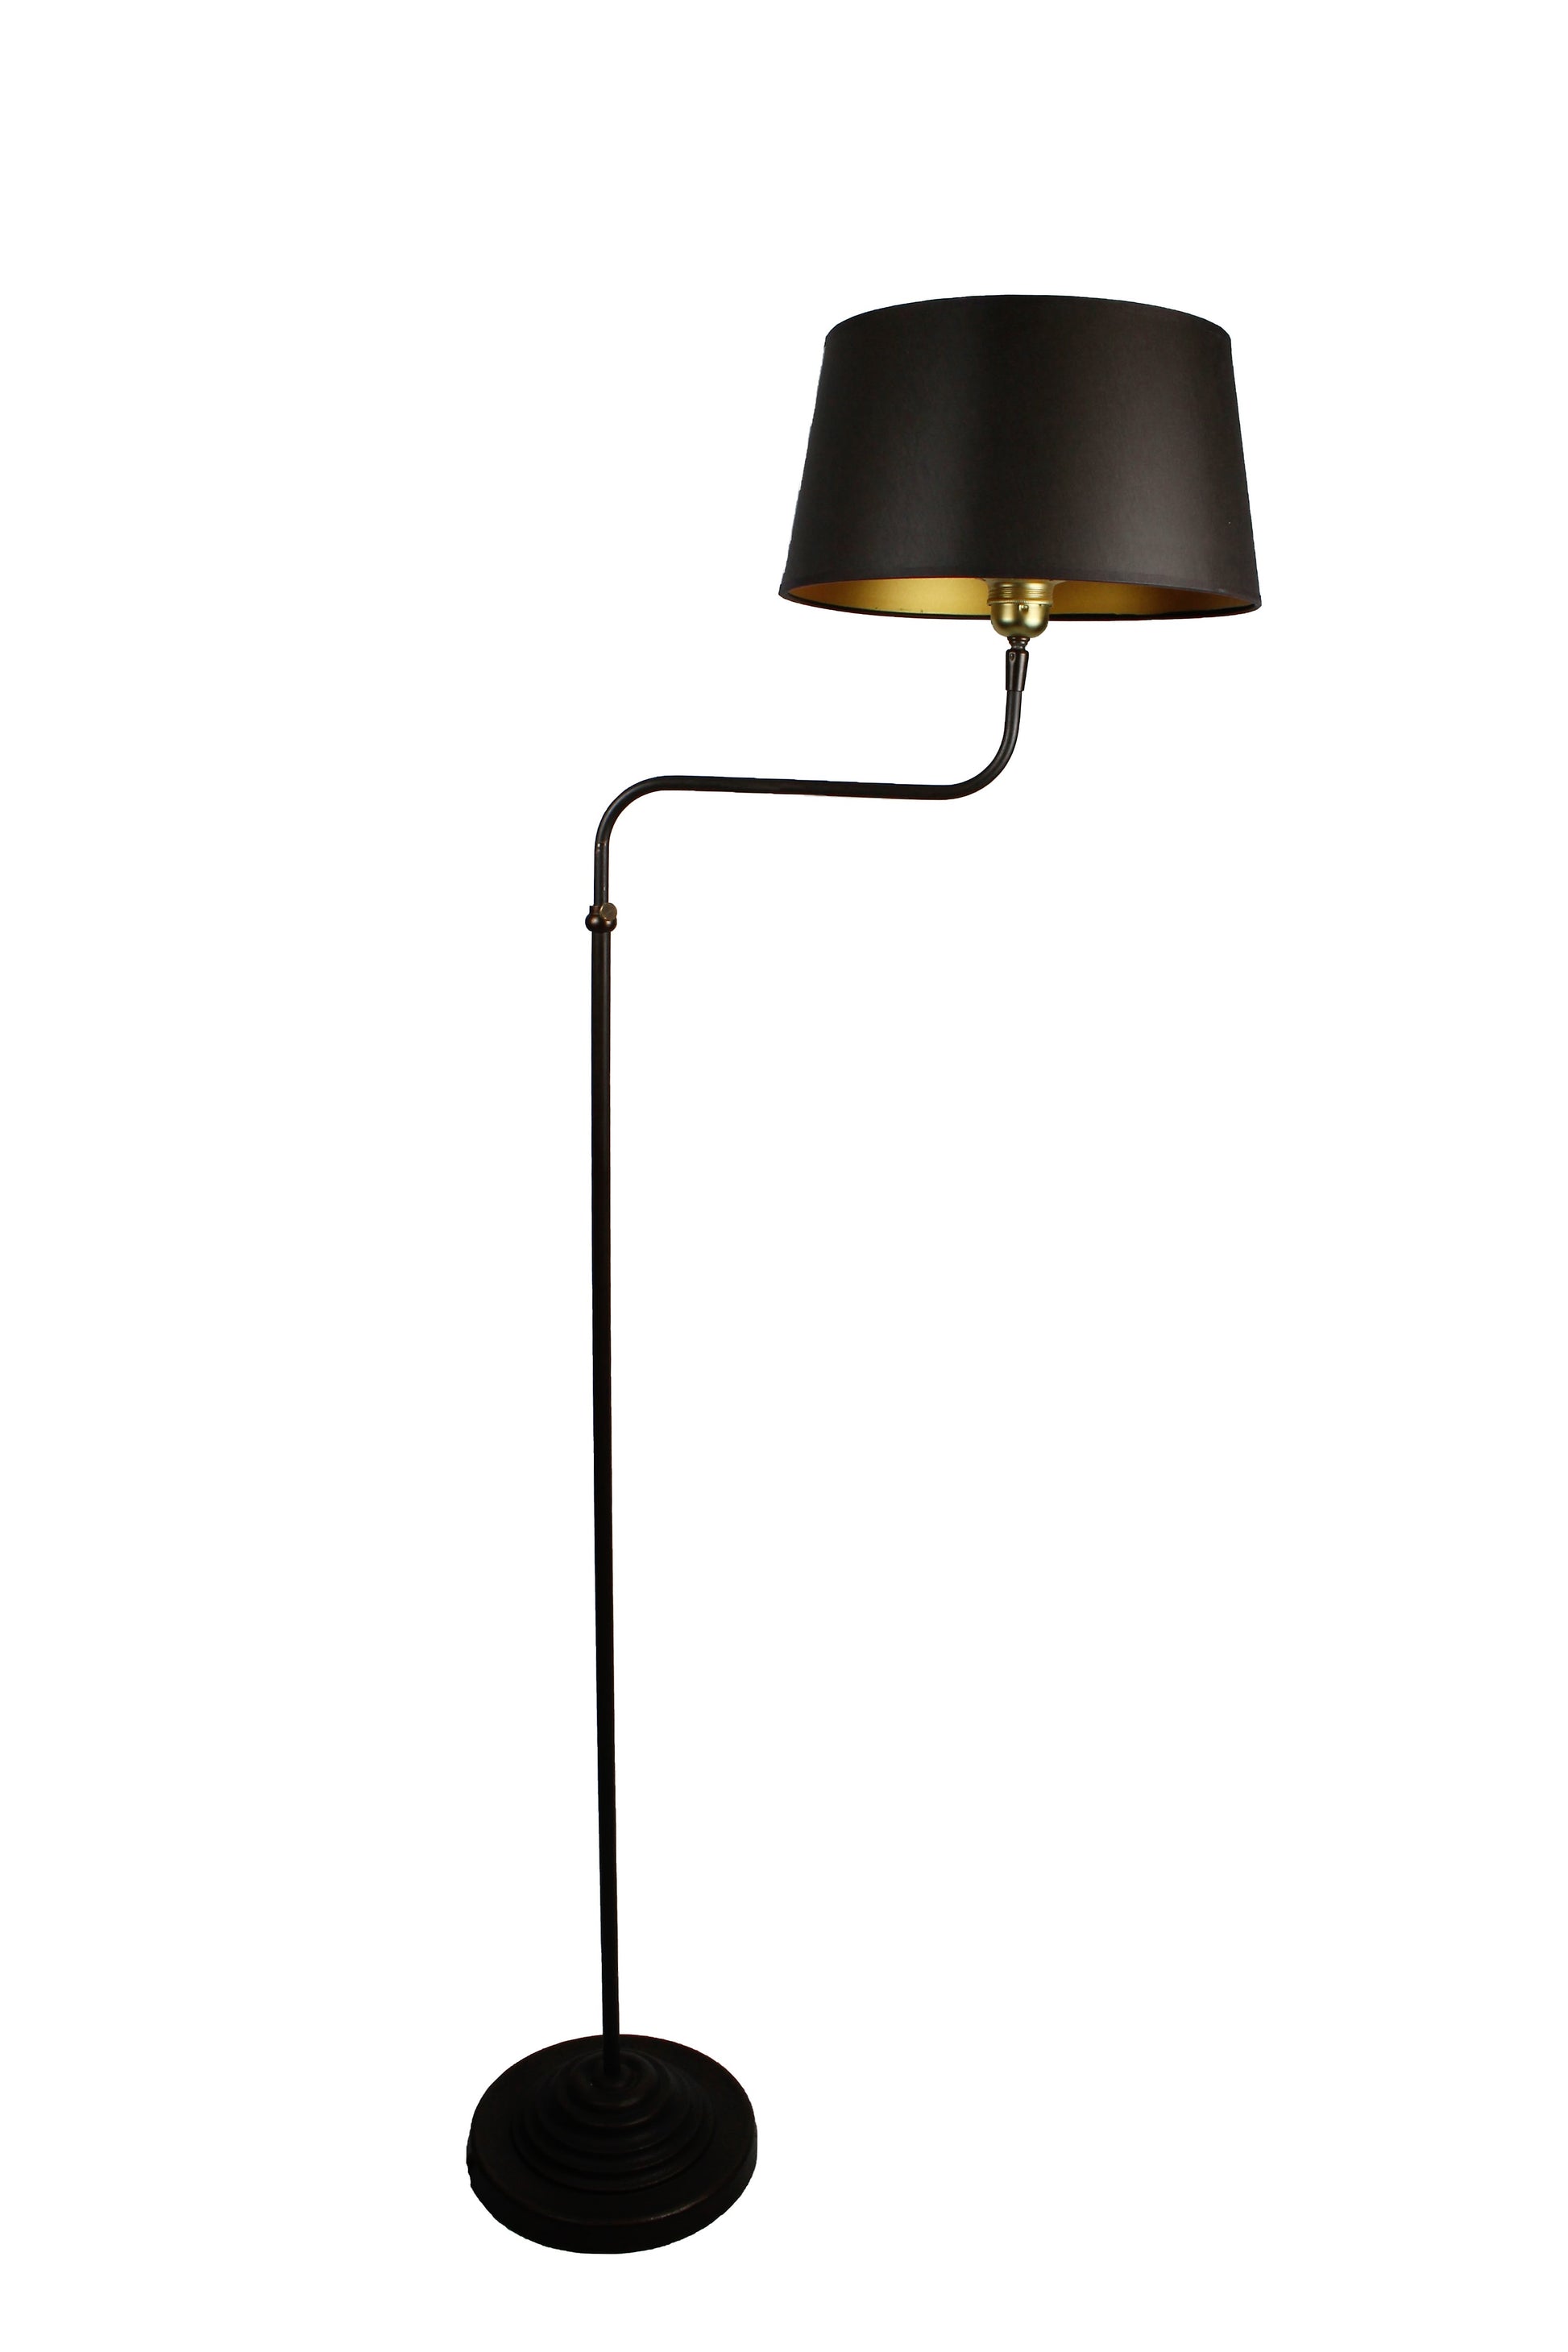 Stehlampe höhenverstellbar in Metall dunkelbraun mit Lampenschirm 